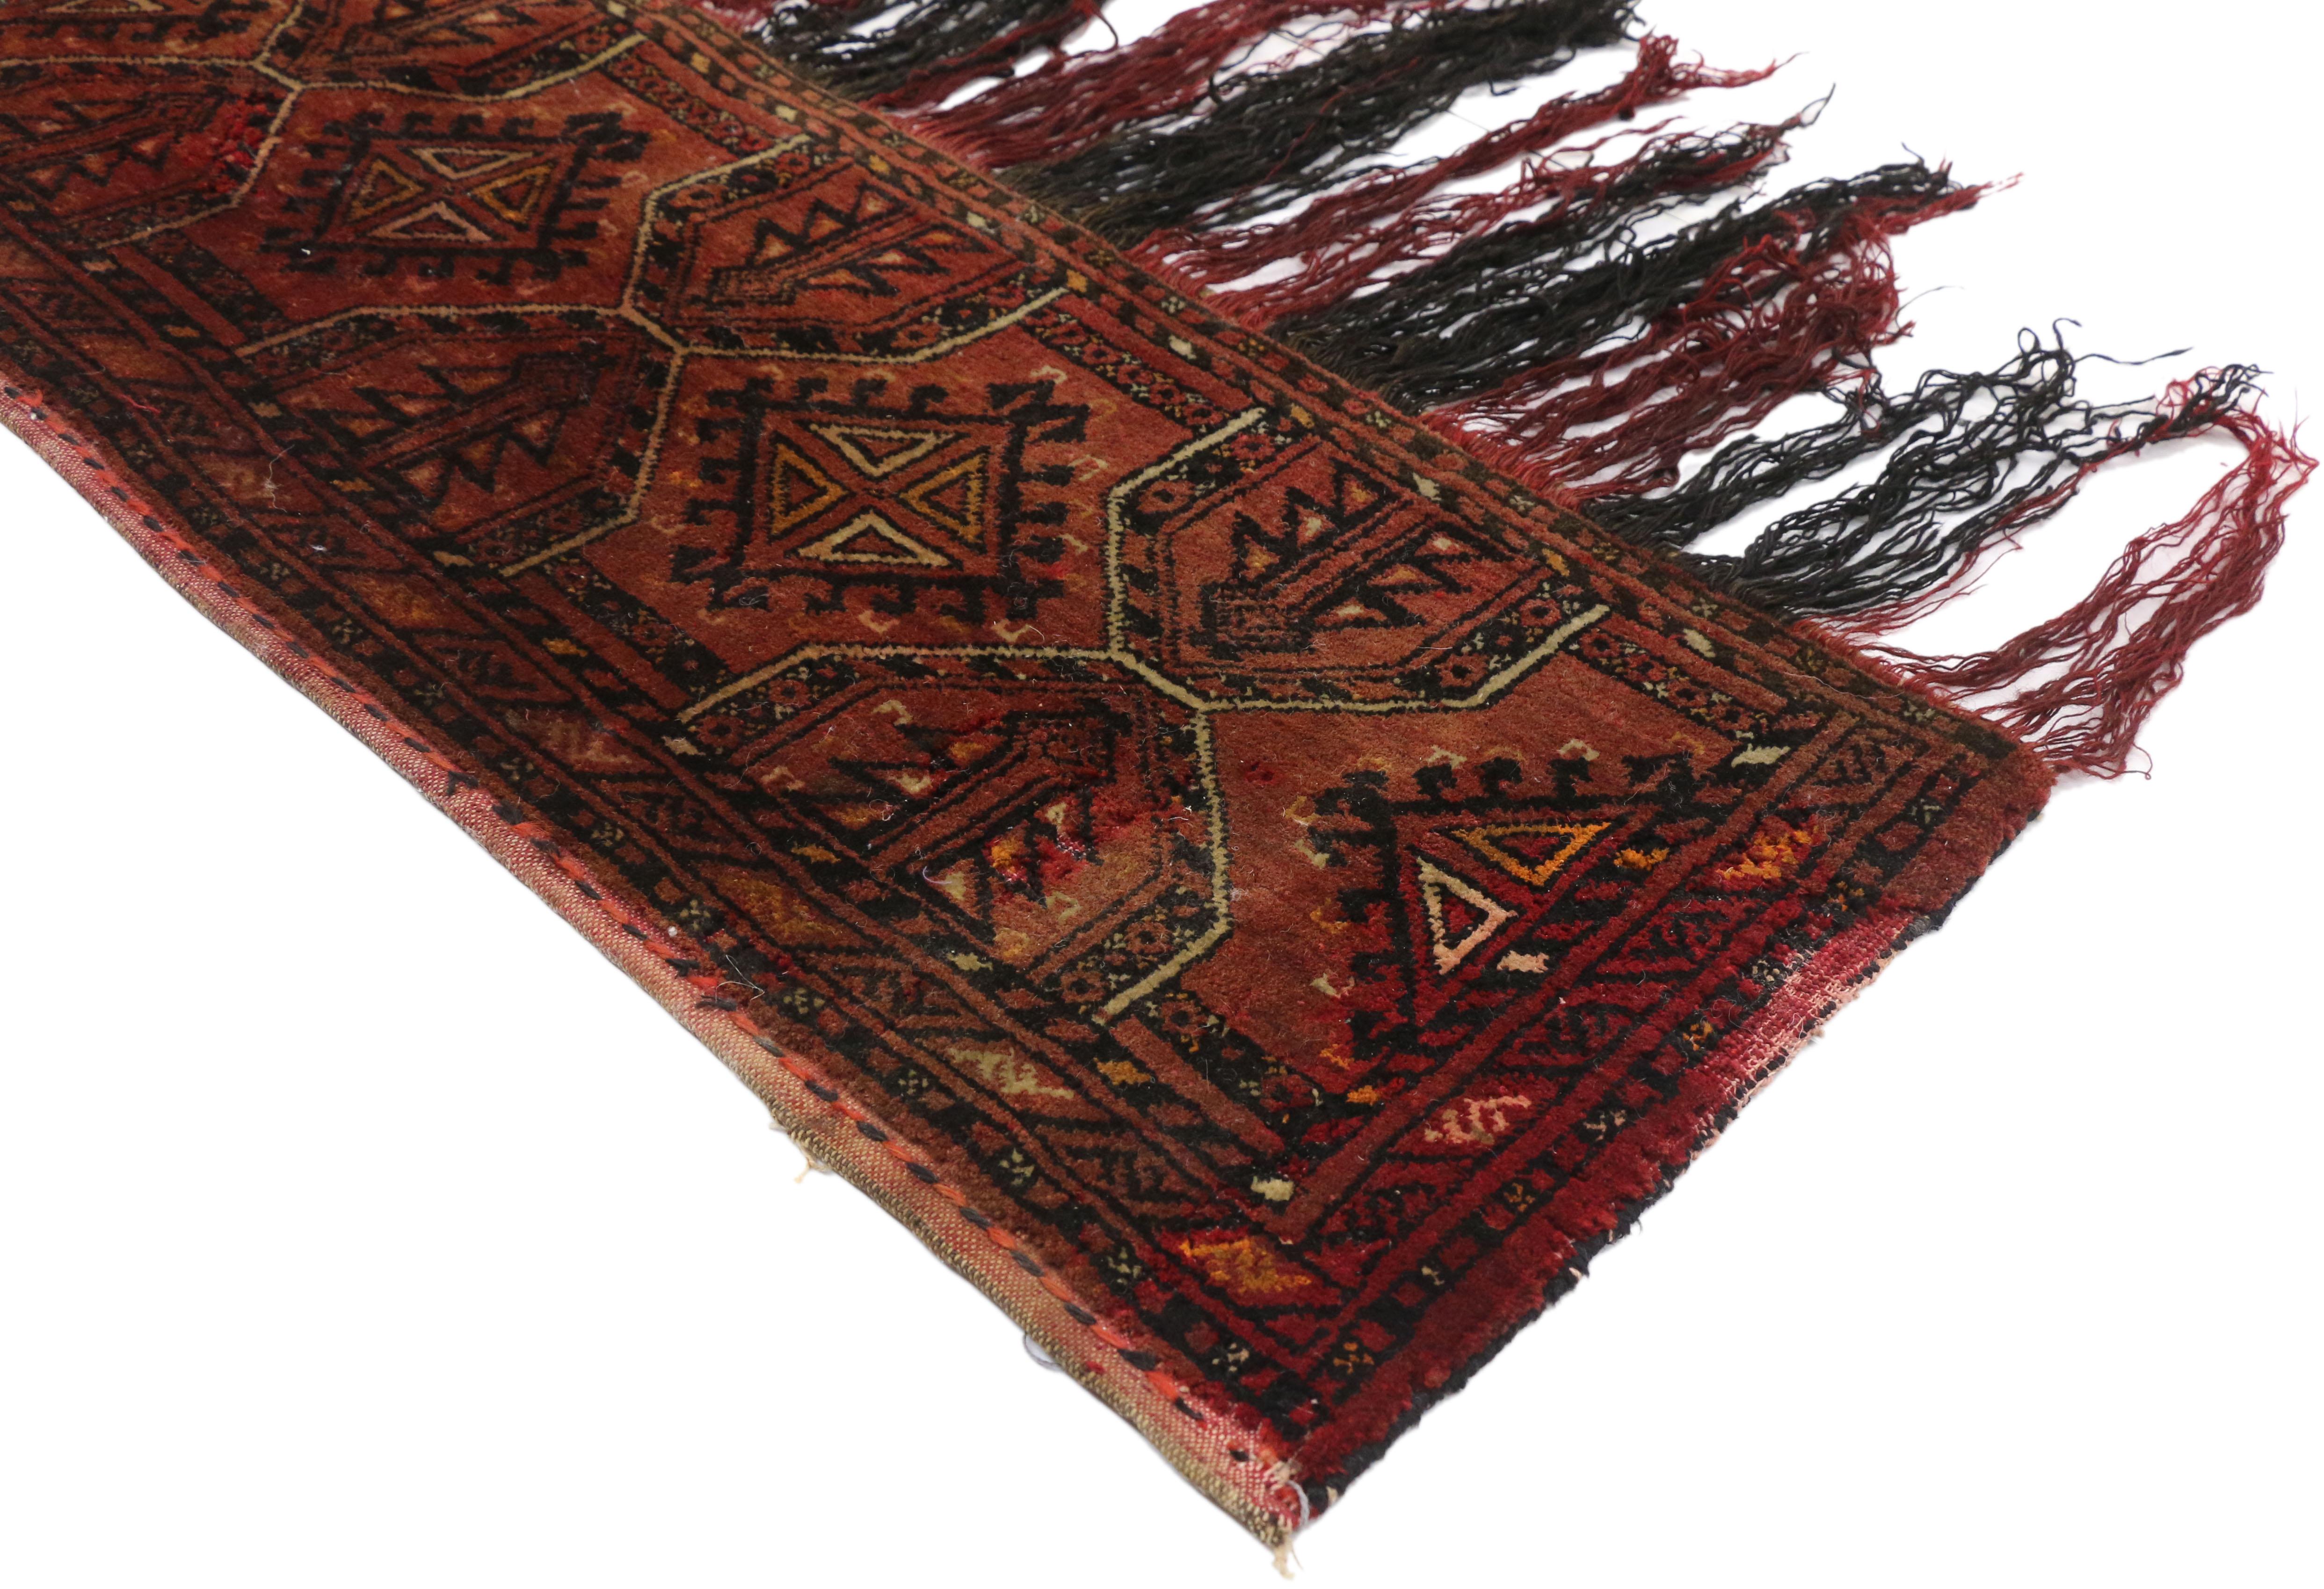 77254, ancien sac afghan turkmène turkmène Torba, tenture murale, tapisserie textile tribale. Ce sac de rangement Torba en laine afghane turkmène nouée à la main présente un motif géométrique symétrique sur toute la surface, composé de motifs Gul,